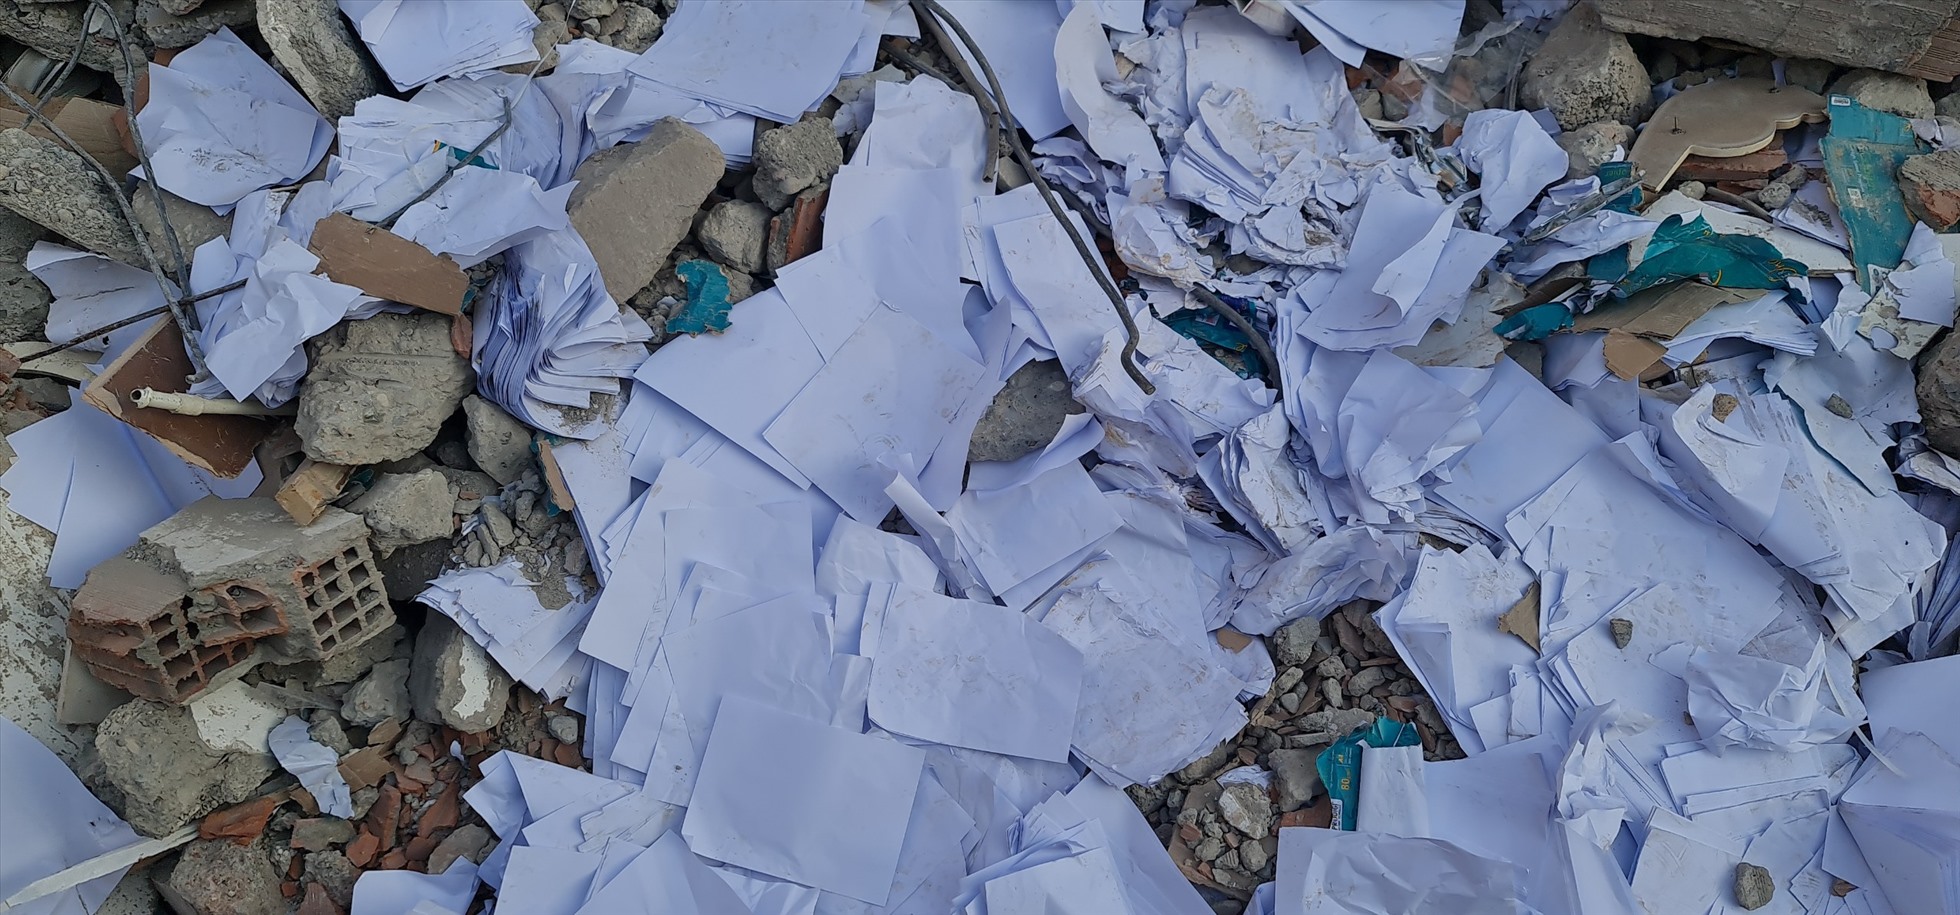 Nhiều tài liệu, sách vở lẫn lộn trong đống đổ nát. Ảnh: Cục Cảnh sát PCCC&CNCH